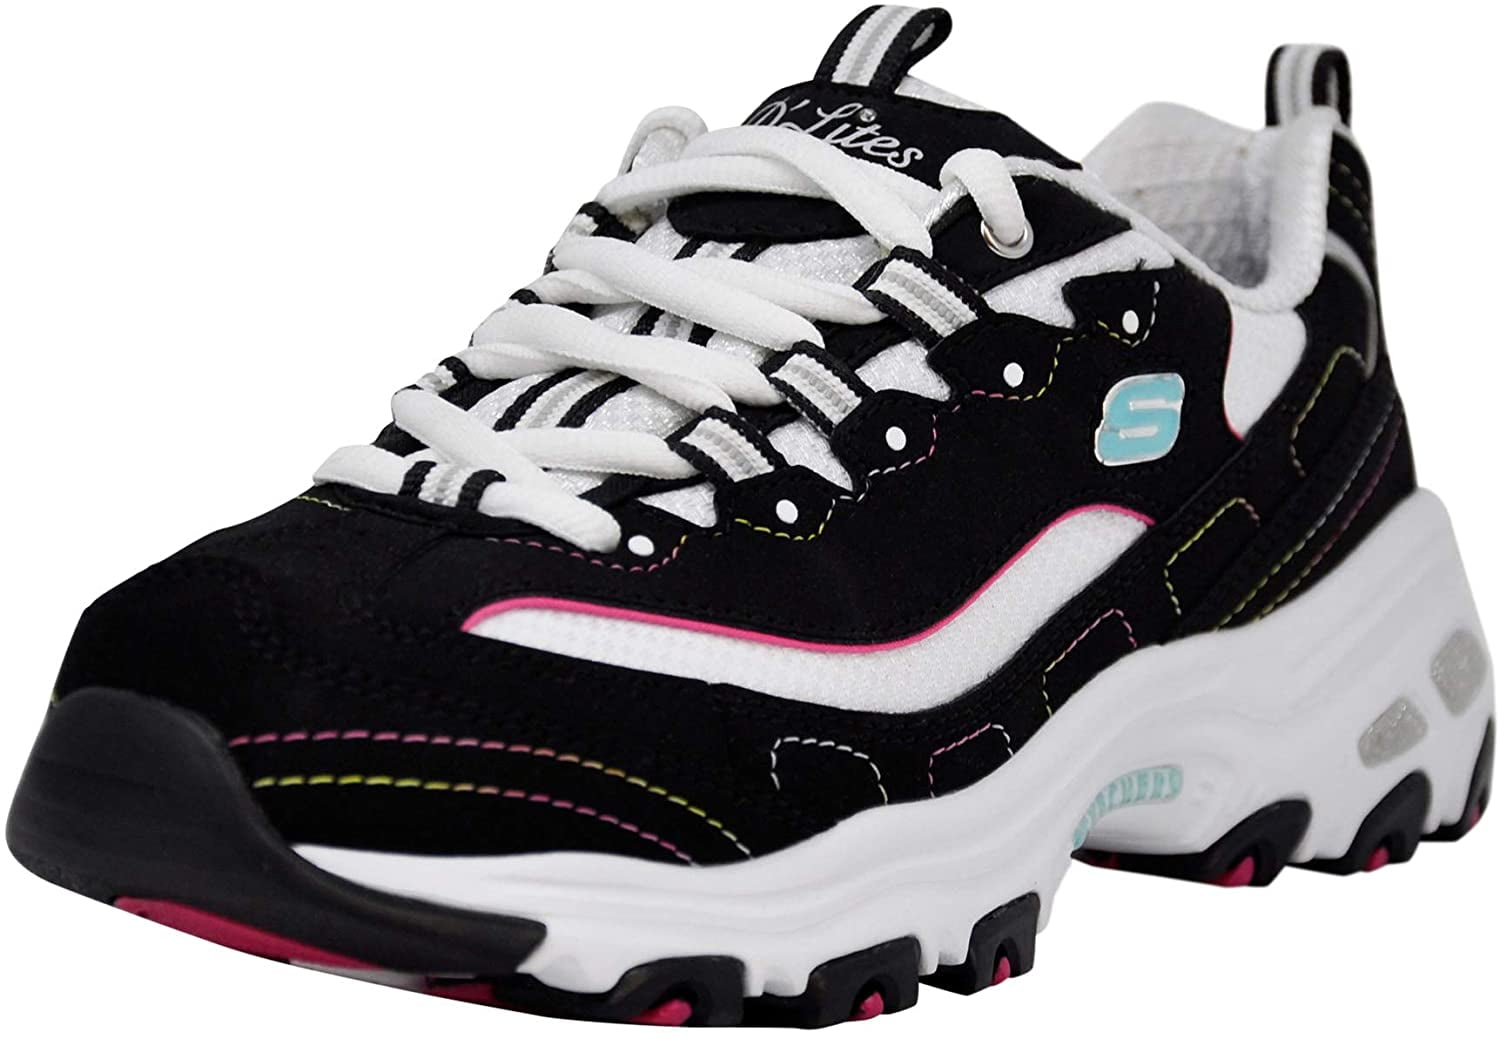 Women's D Lites Shoe, Navy/Pink, M US - Walmart.com